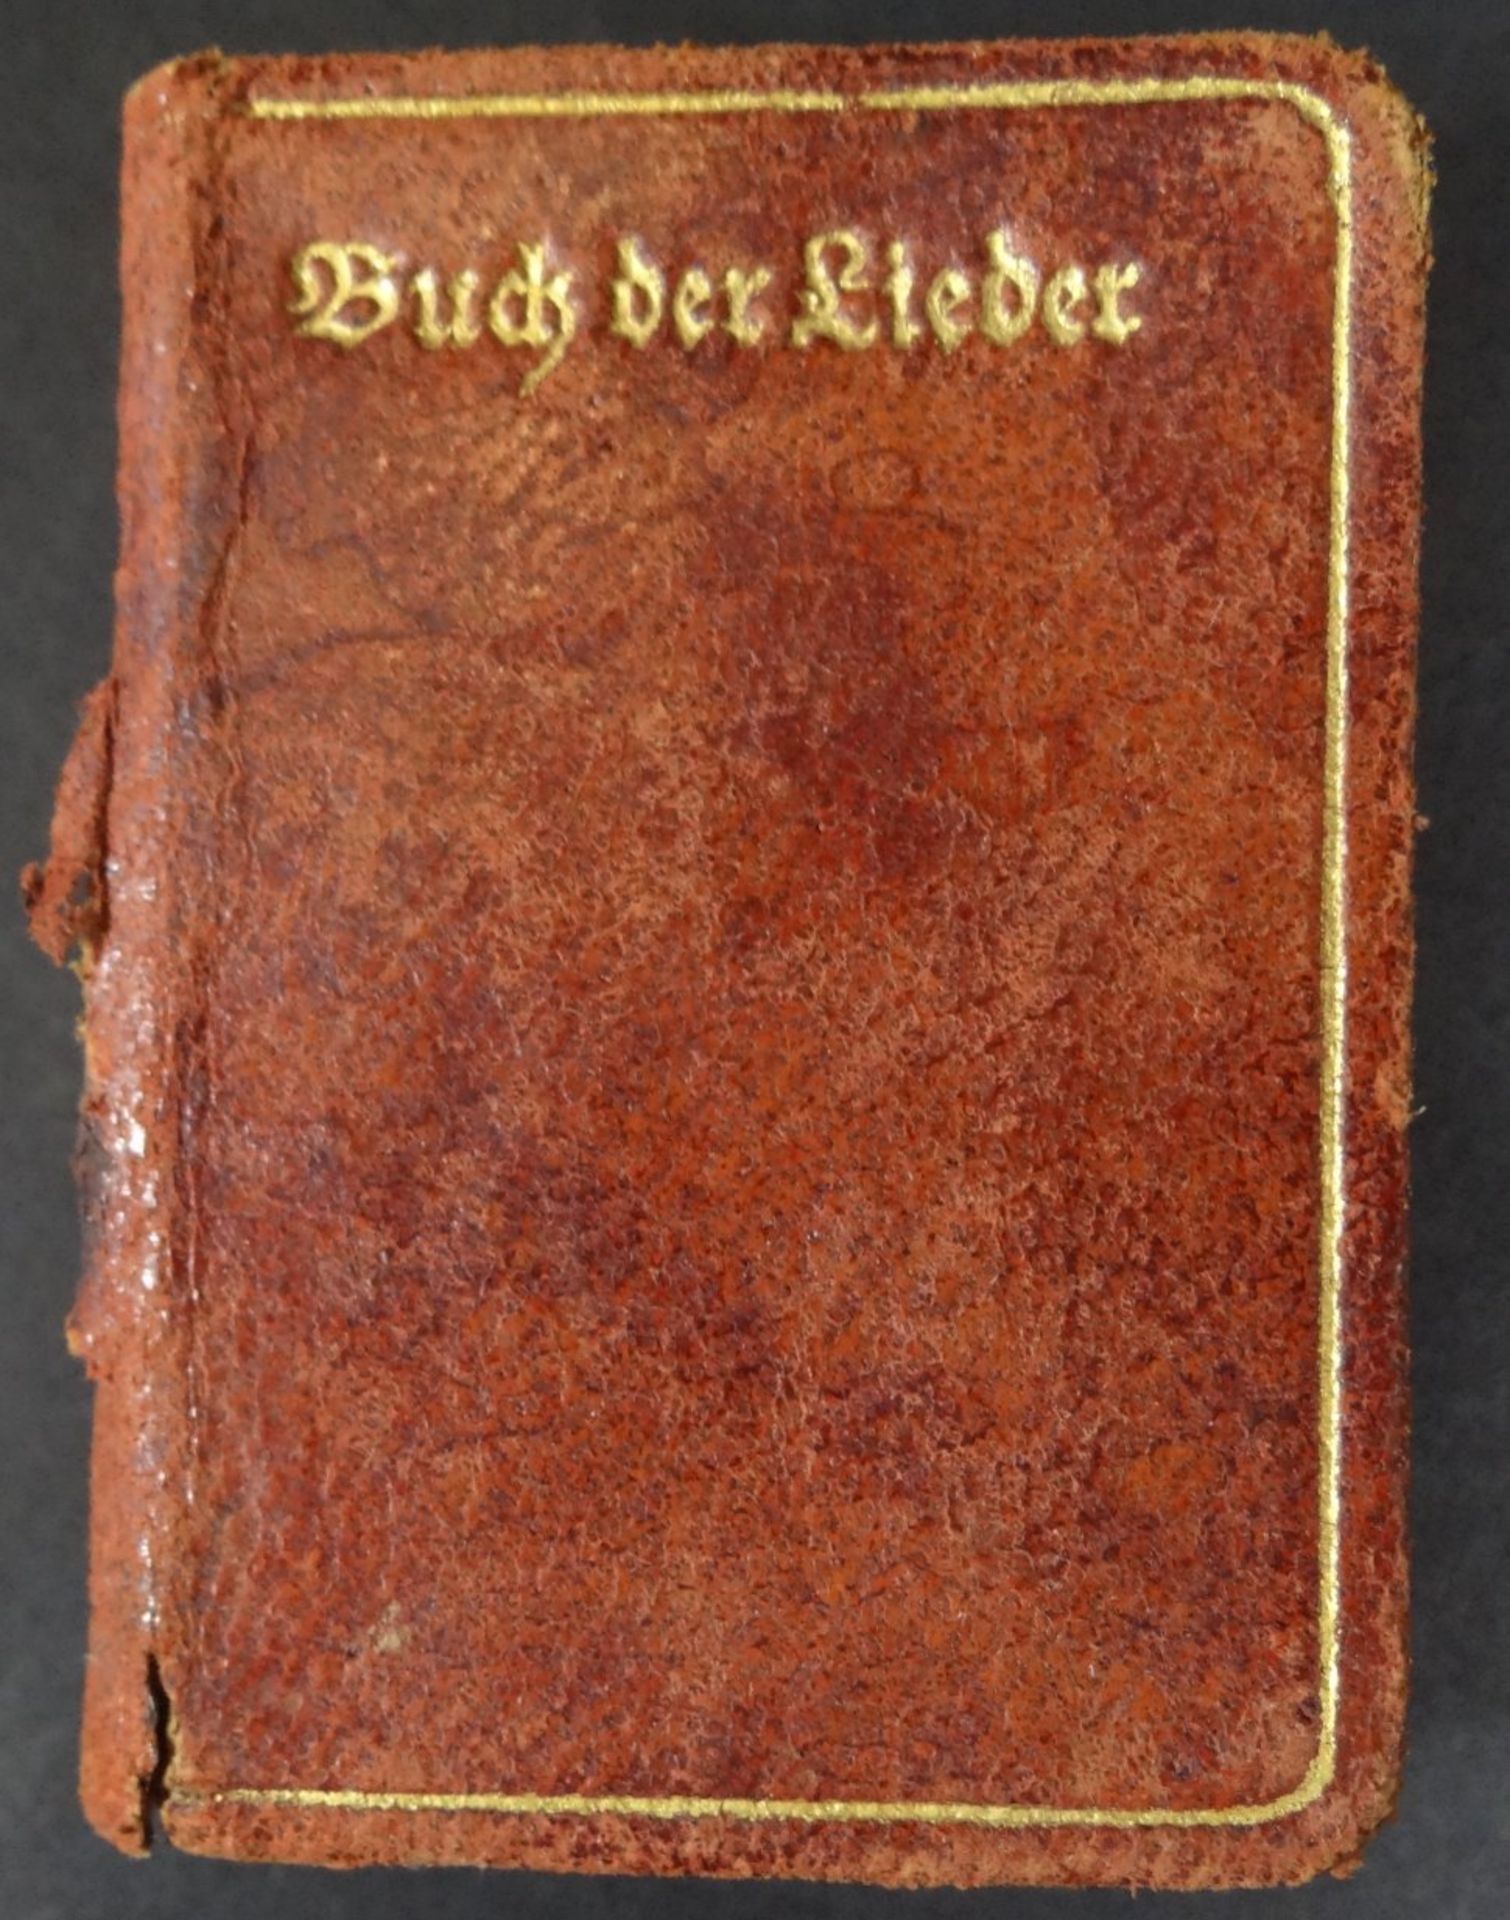 Miniatur-Büchlein, H.Heine "Das Buch der Lieder" 1913, Einband beschädigt, Alters-u.